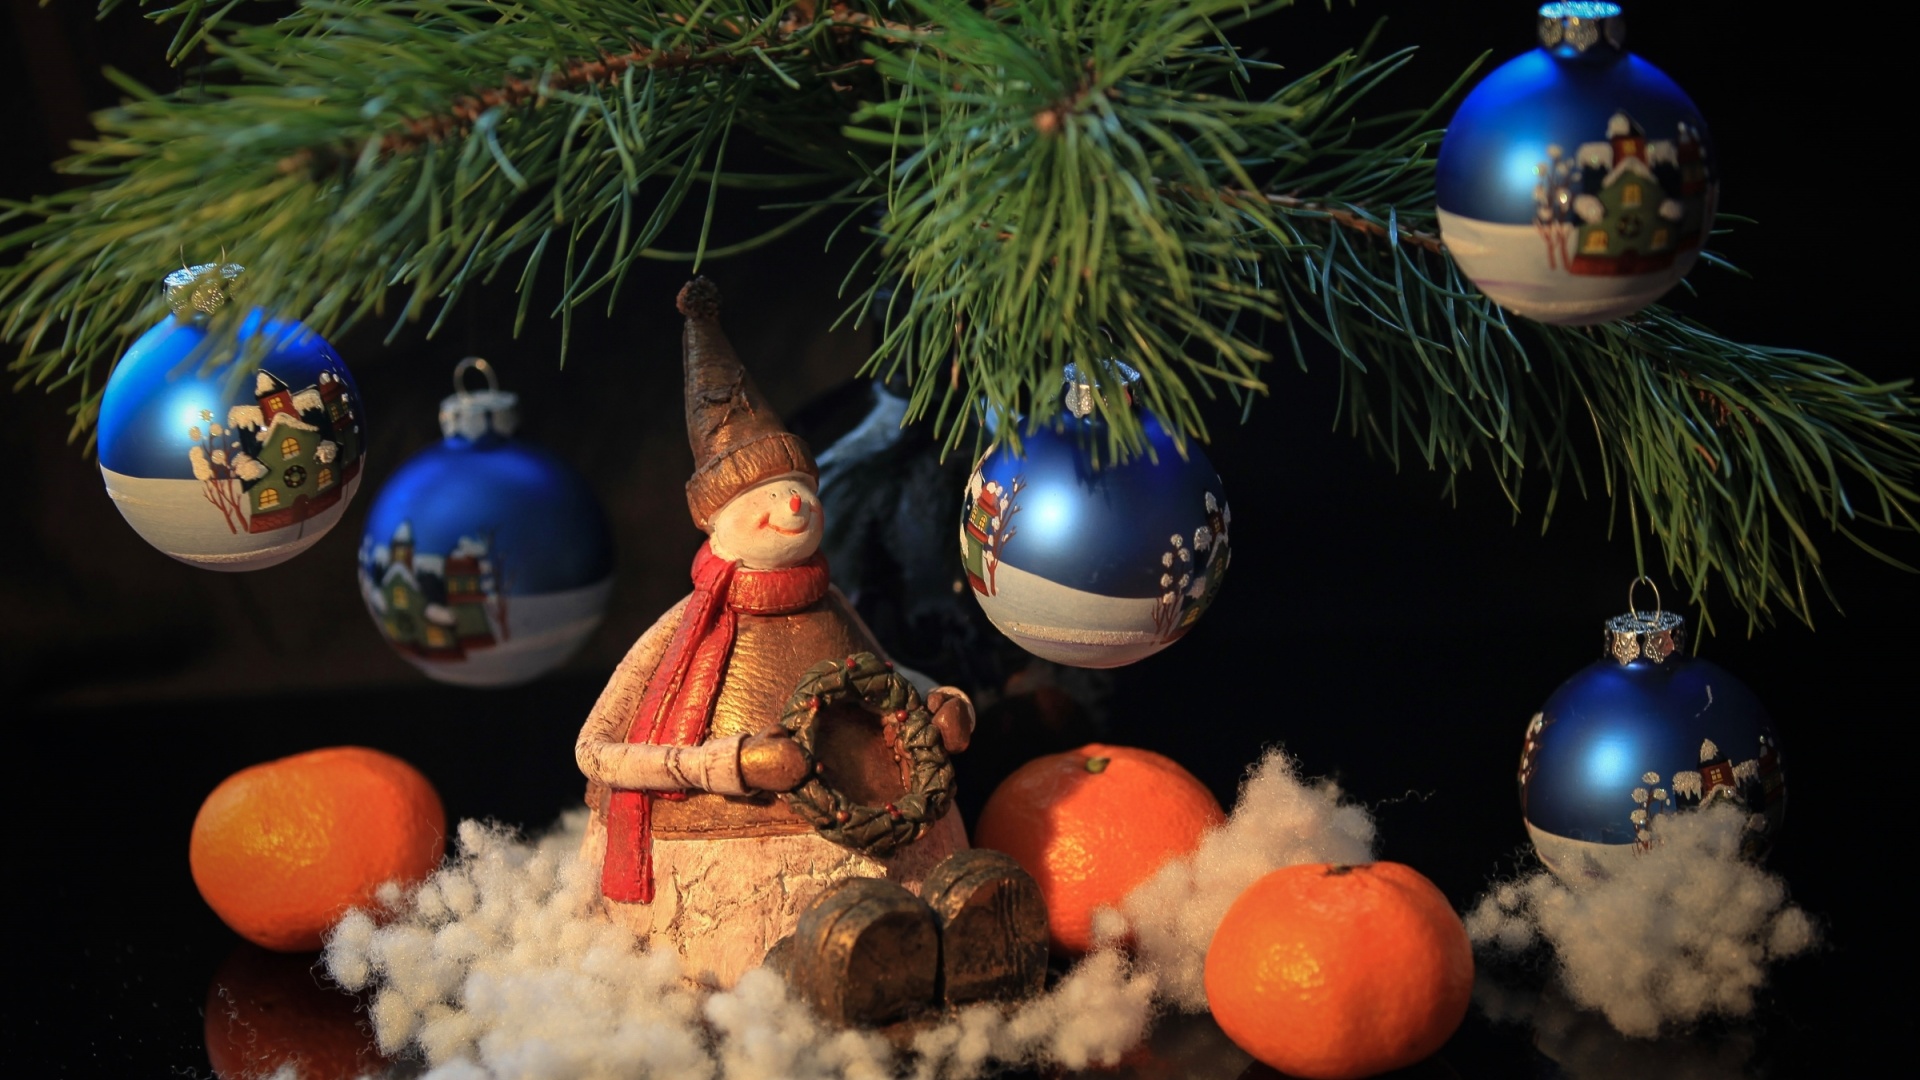 雪人、玩具、松树、橘子、圣诞节桌面壁纸